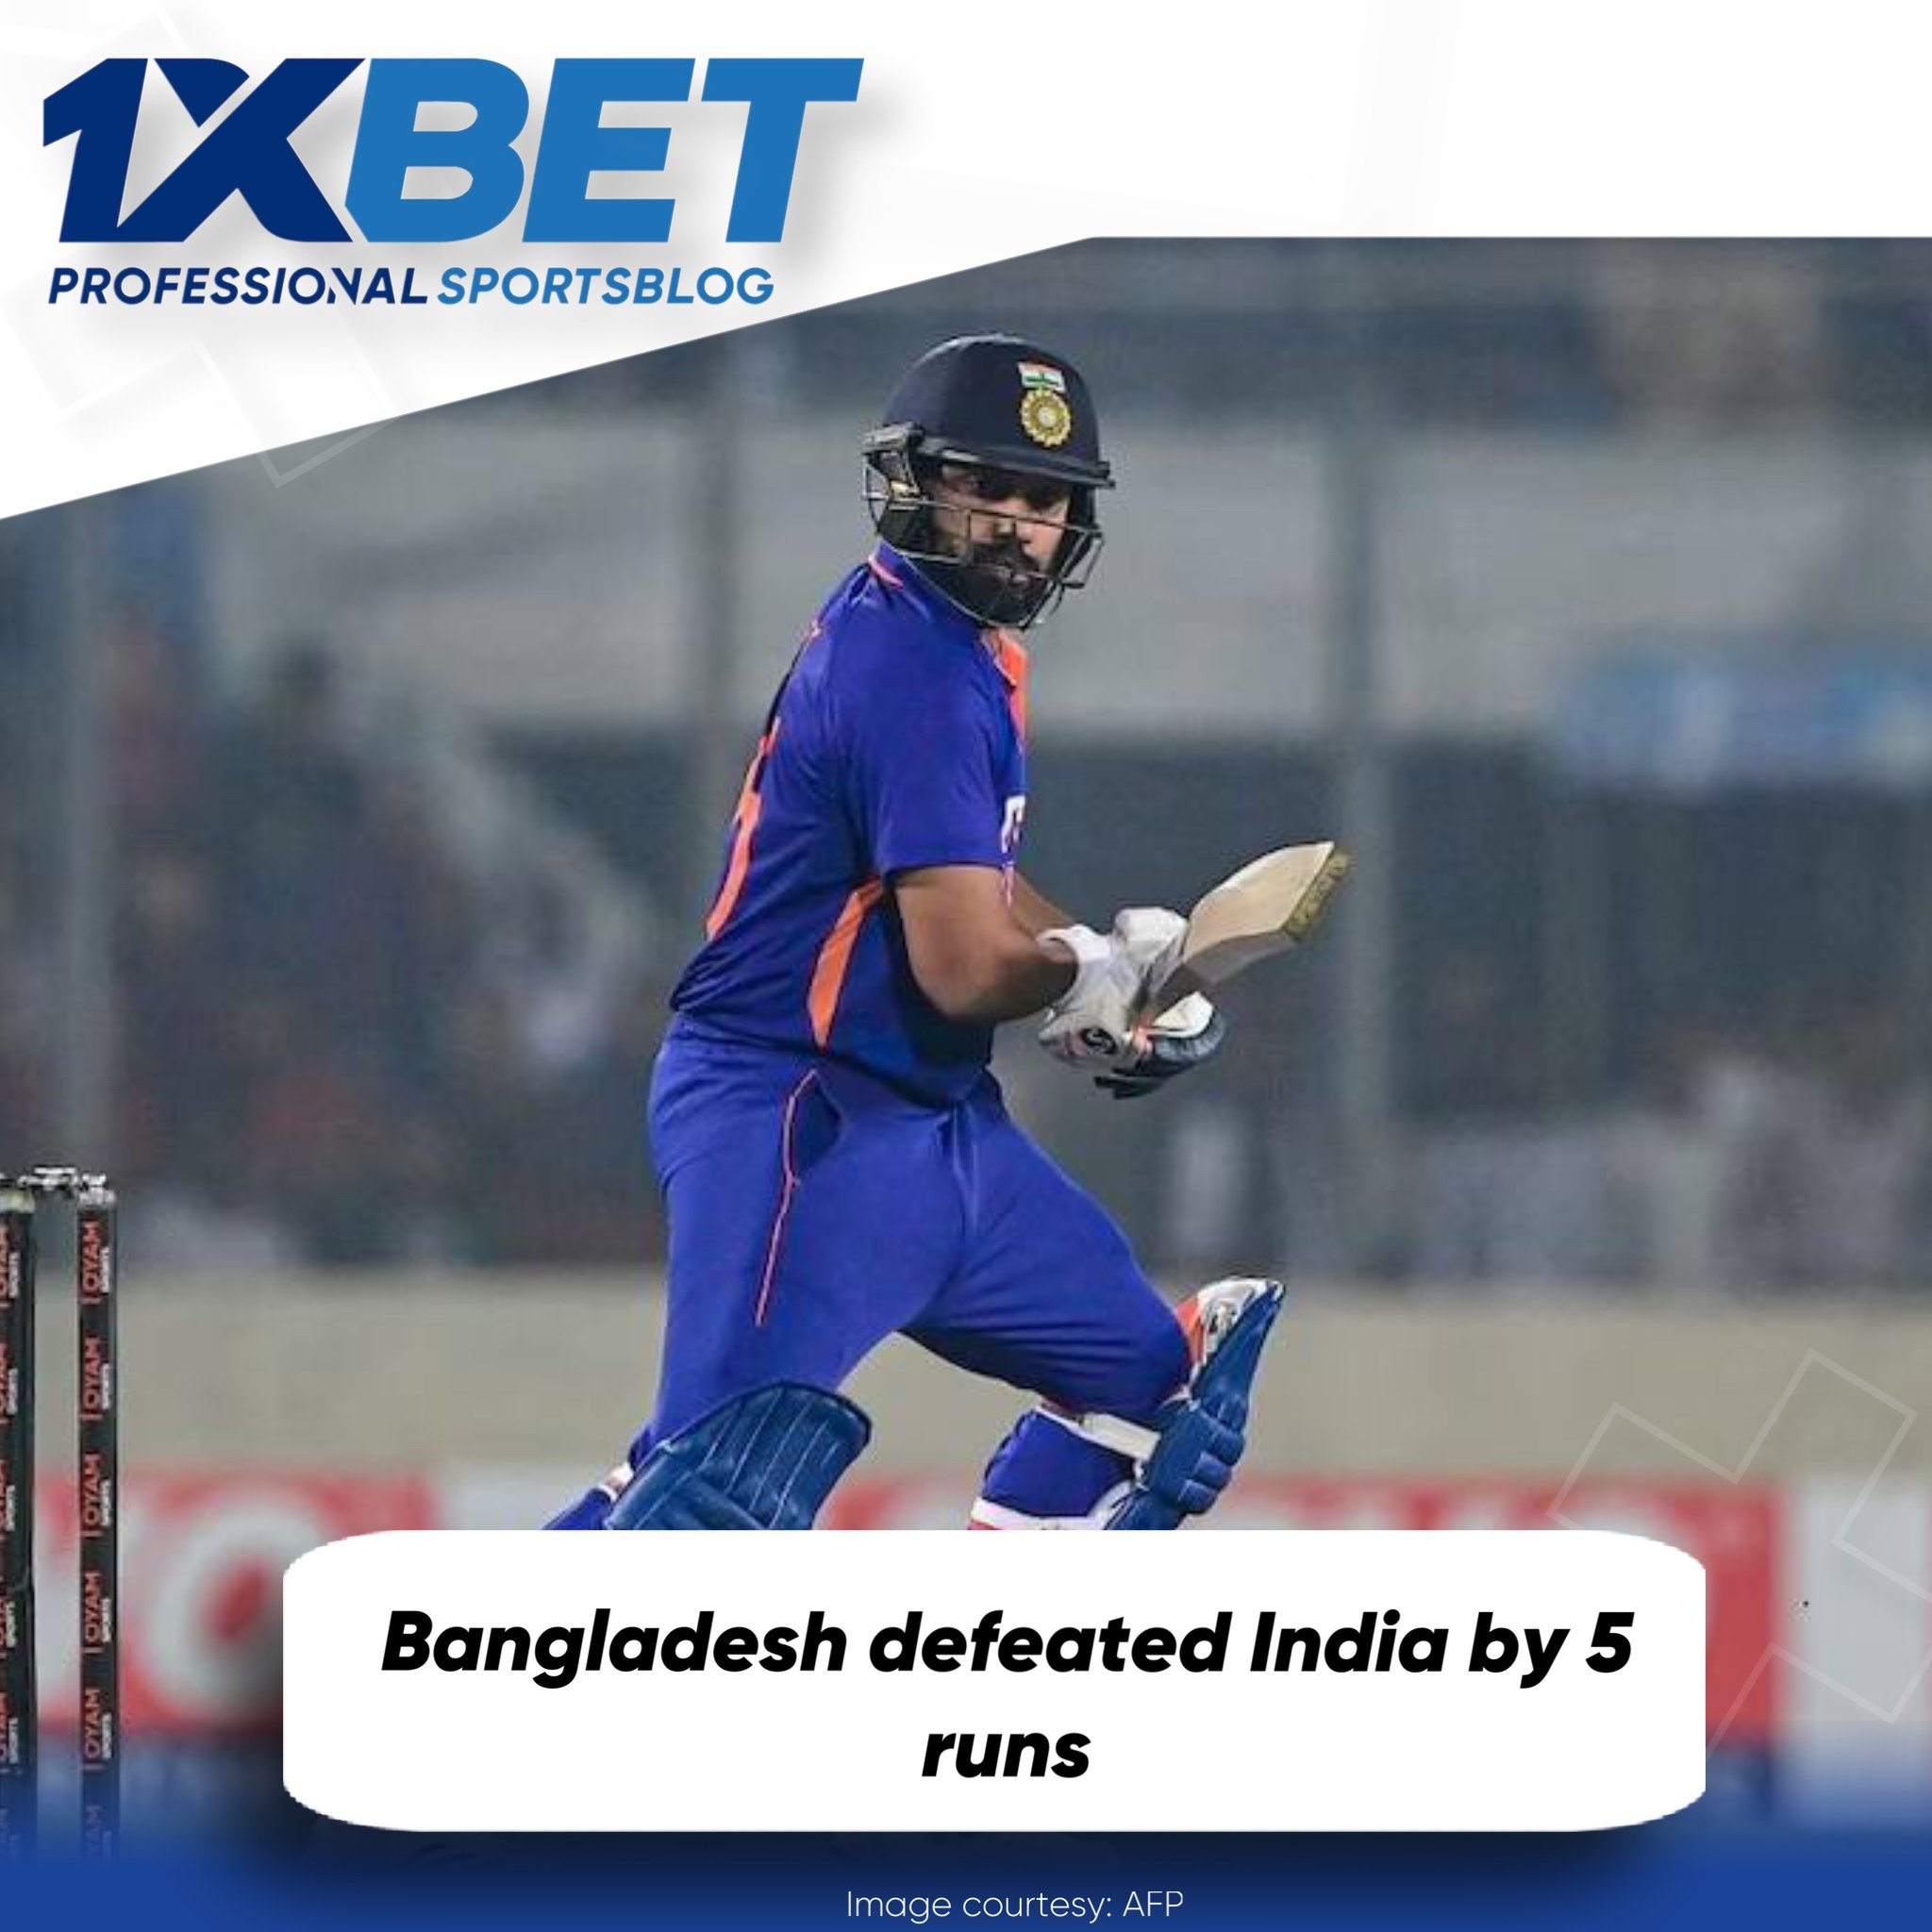 Bangladesh won by 5 runs